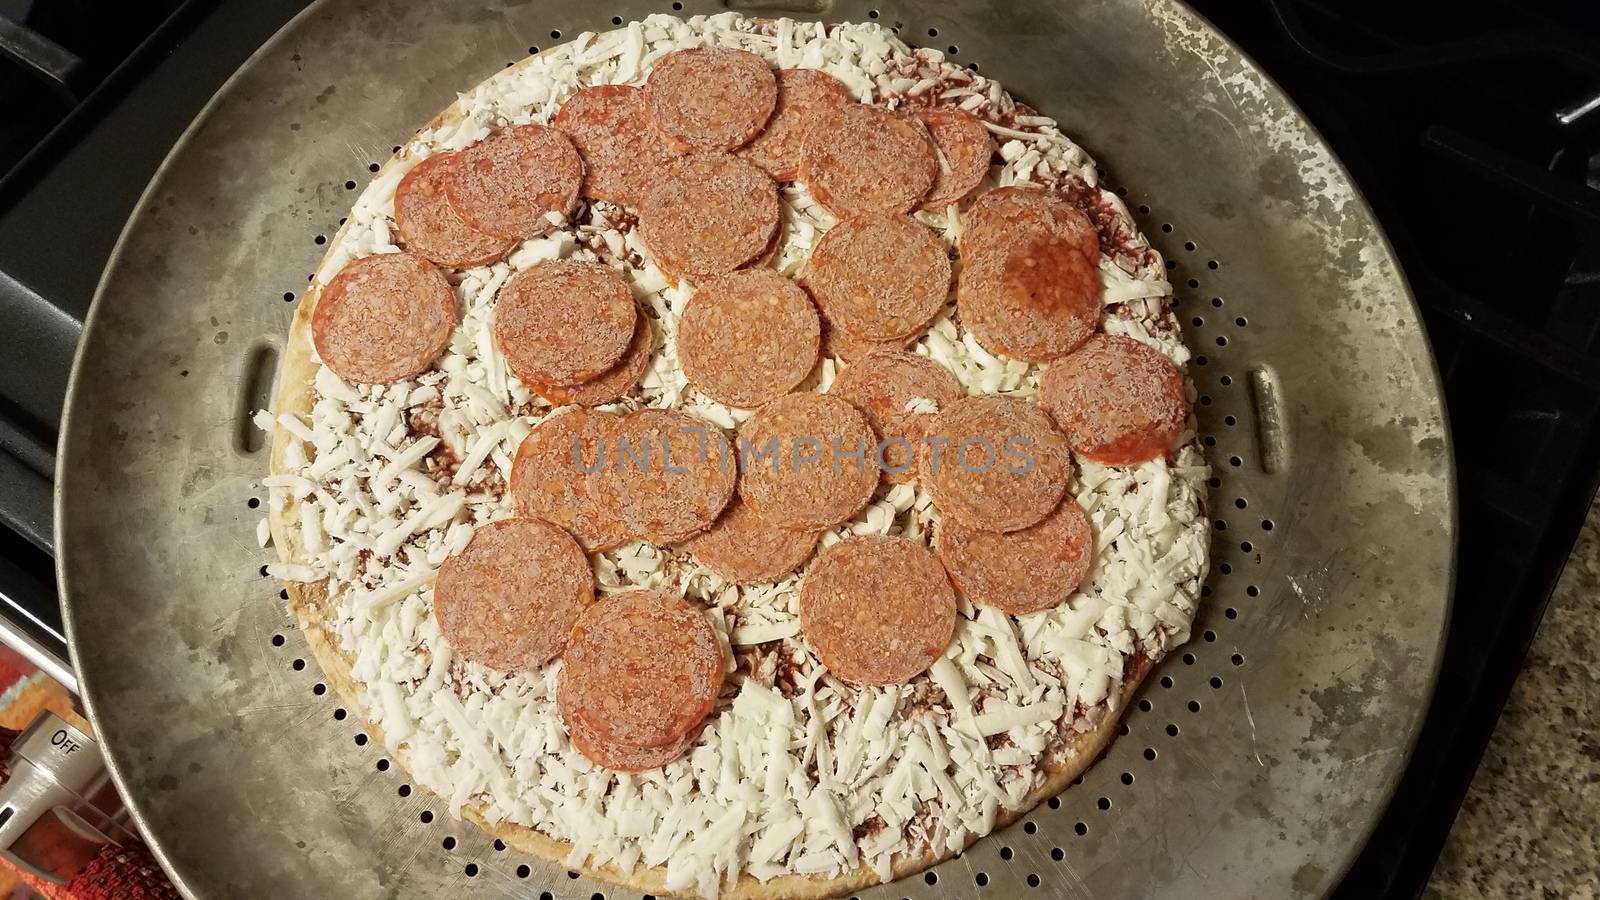 frozen pepperoni meat on pizza on metal baking tray by stockphotofan1